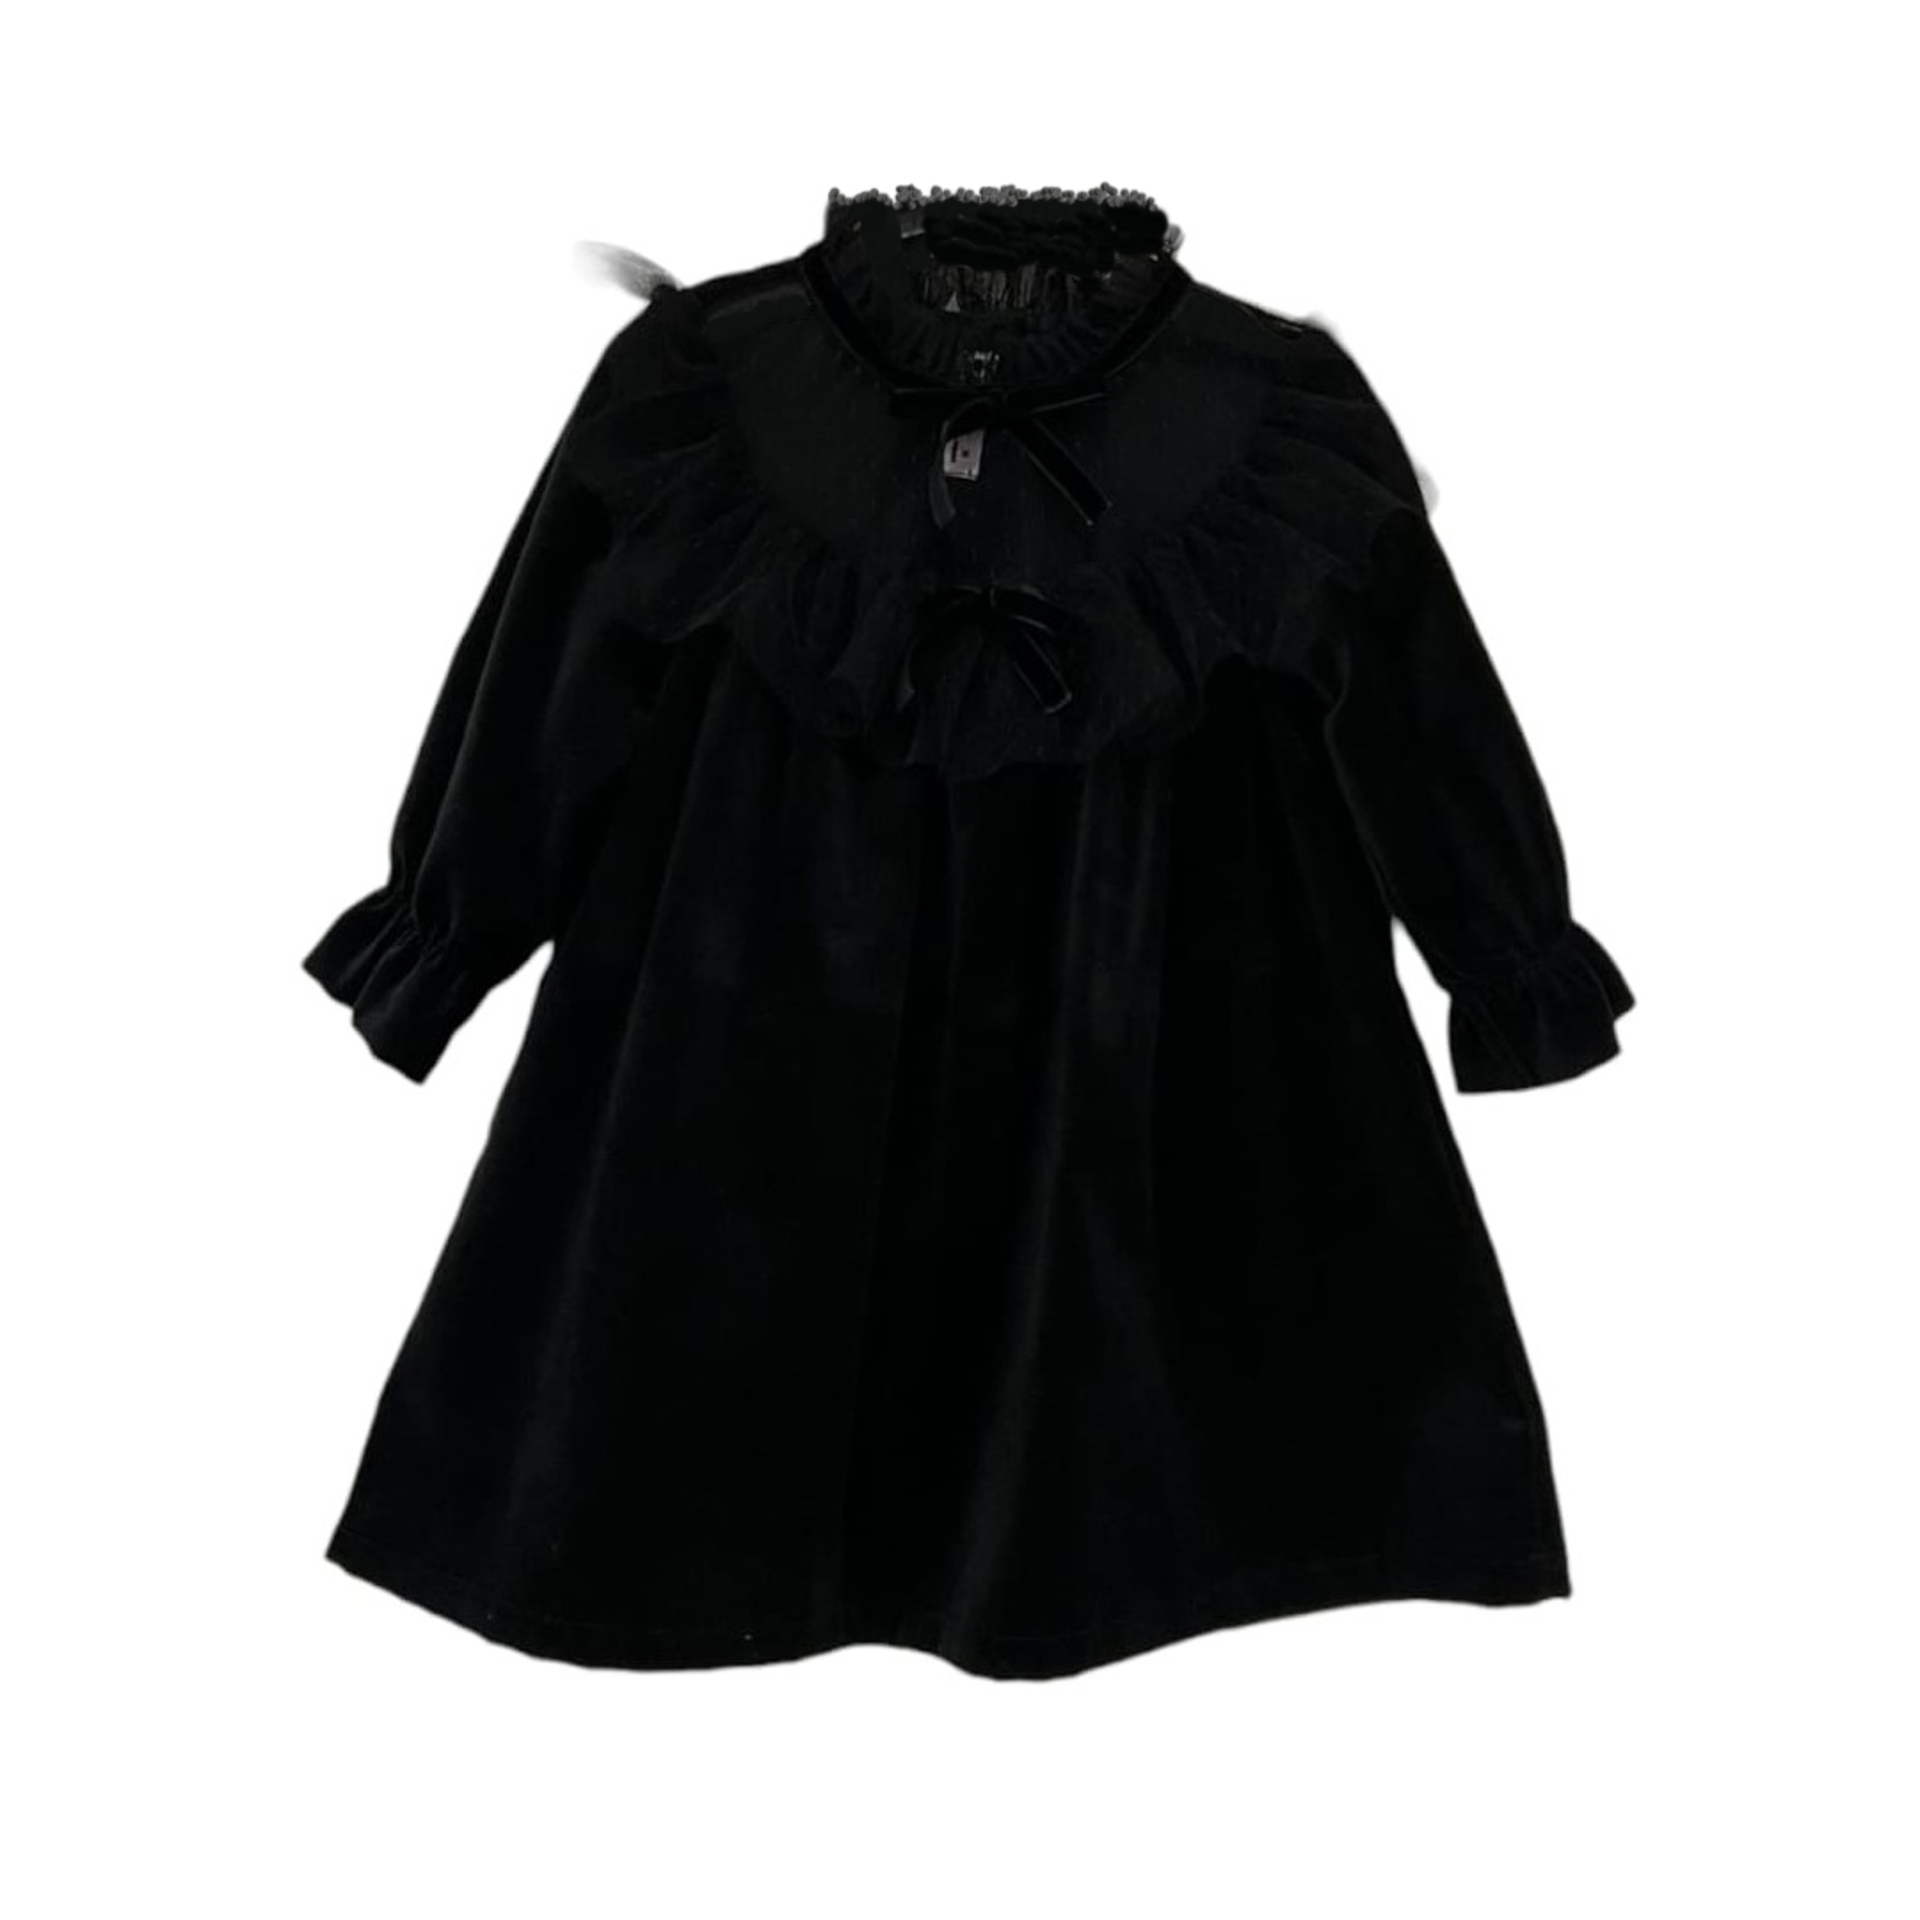 Black velvet with black tule dress